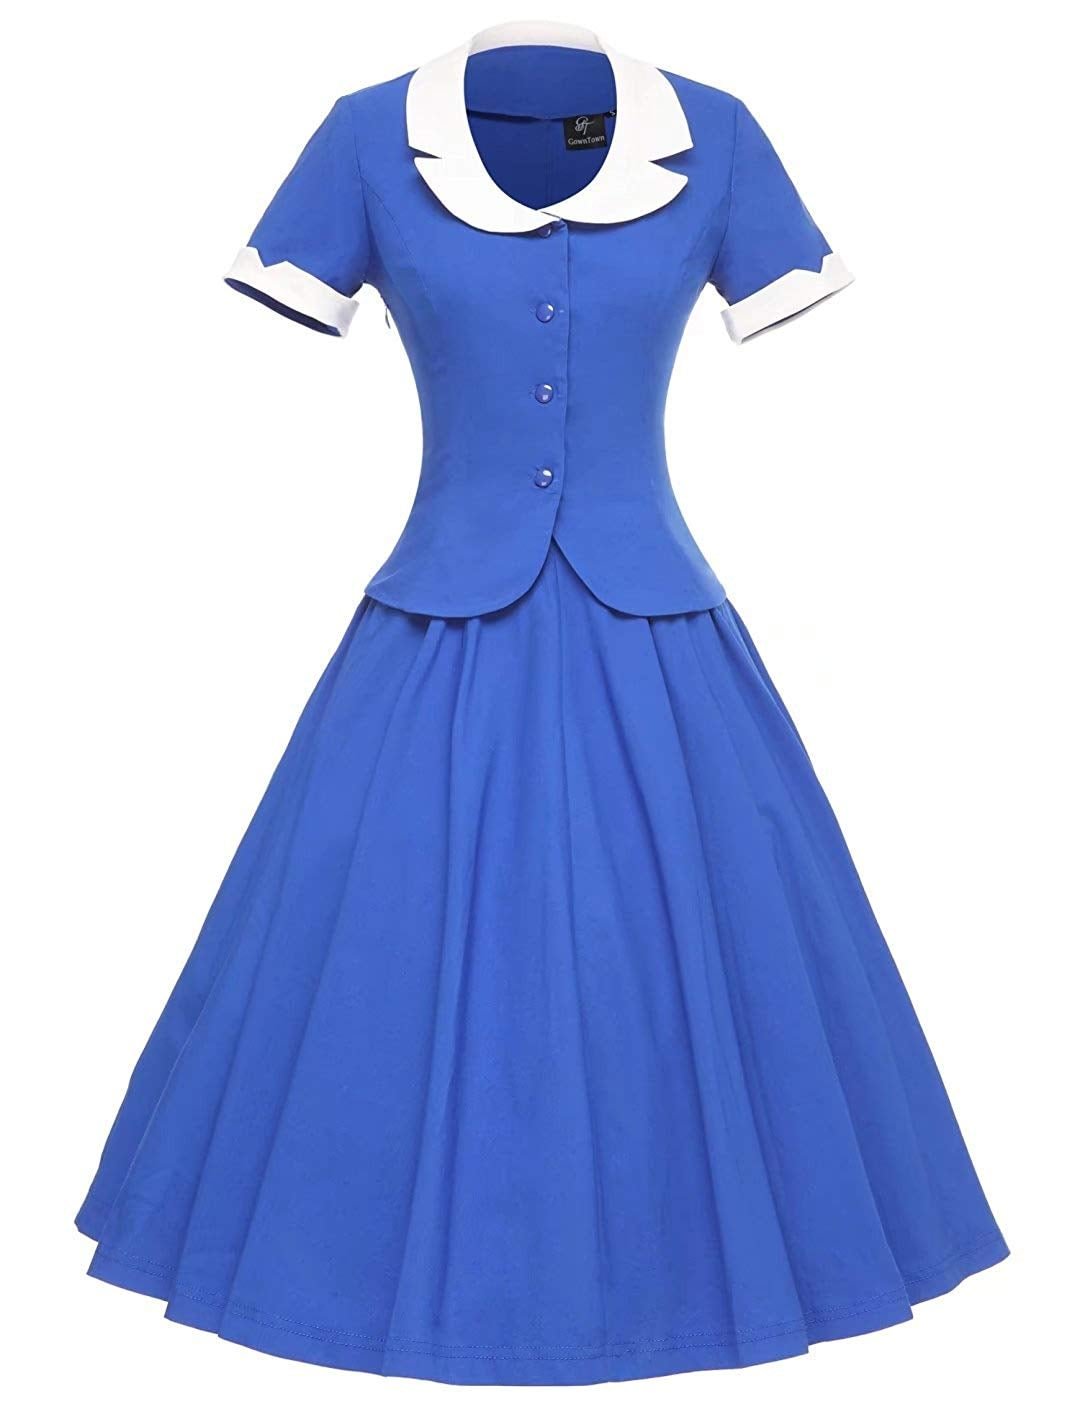 Women's Vintage 1950s Retro Rockabilly Prom Dresses 50s Swing Dress